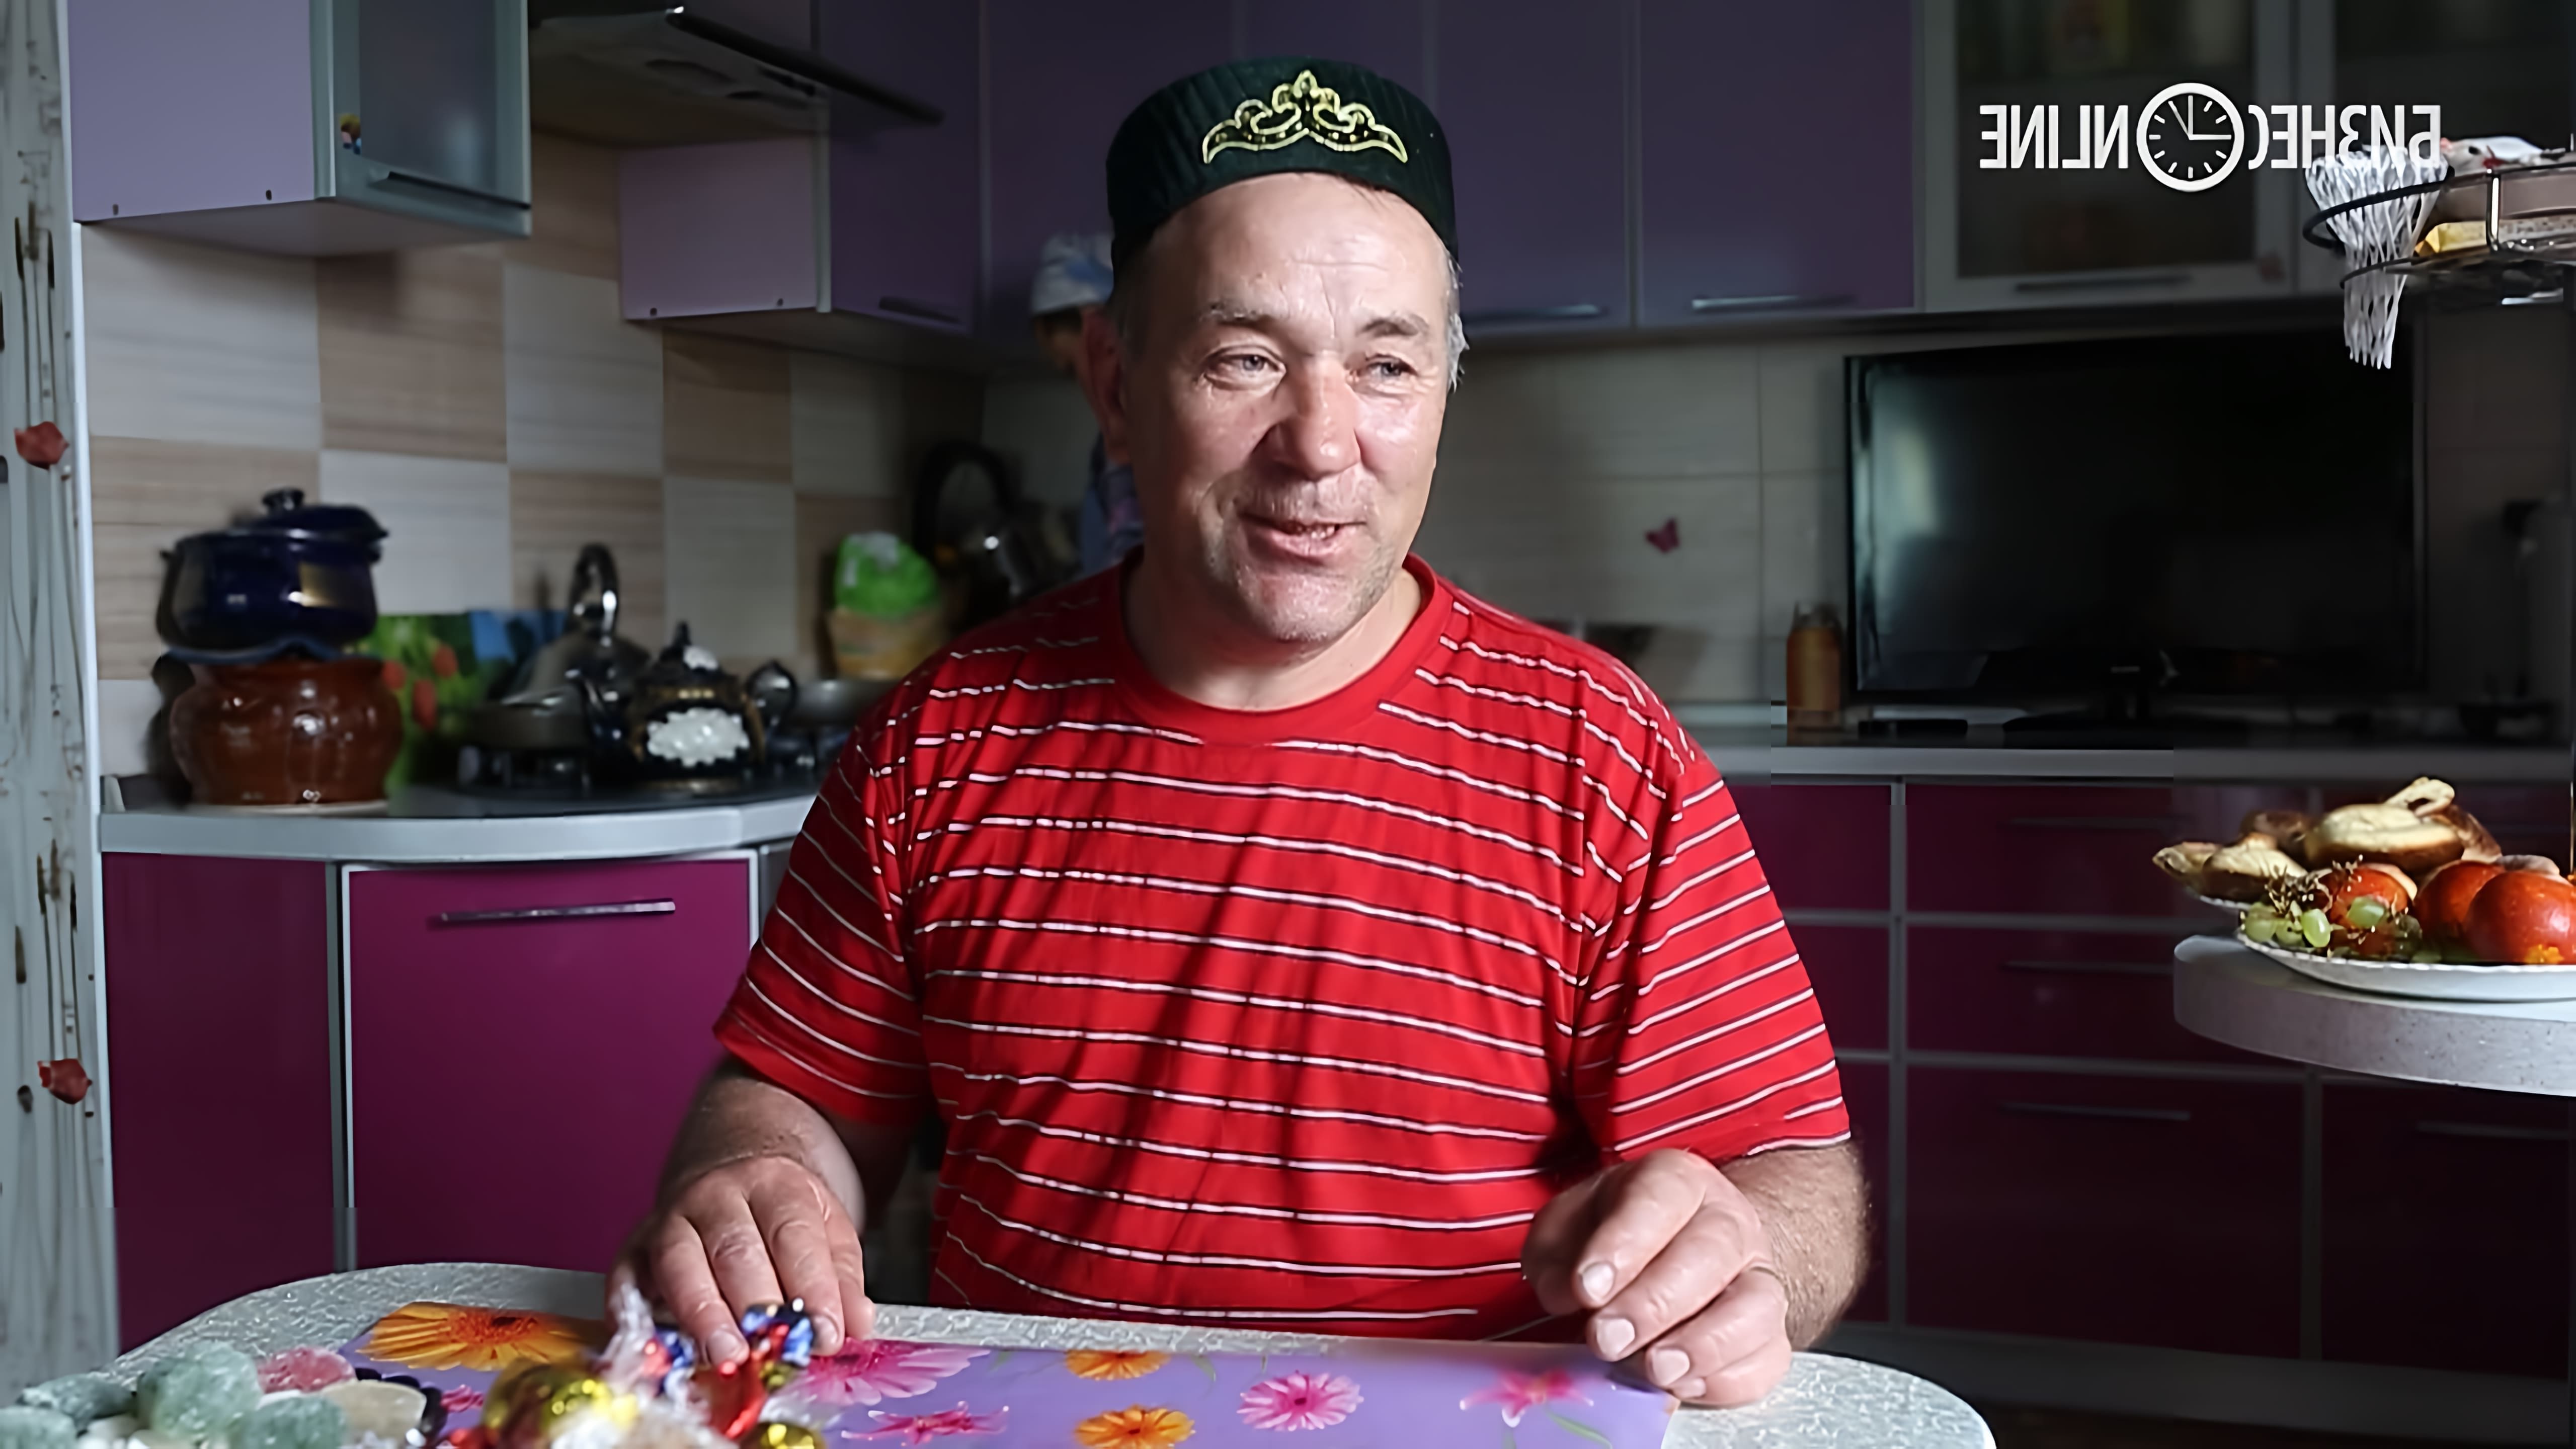 Али Сулейманов - известный предприниматель, который занимается производством конской колбасы для сети магазинов "Бахетле"